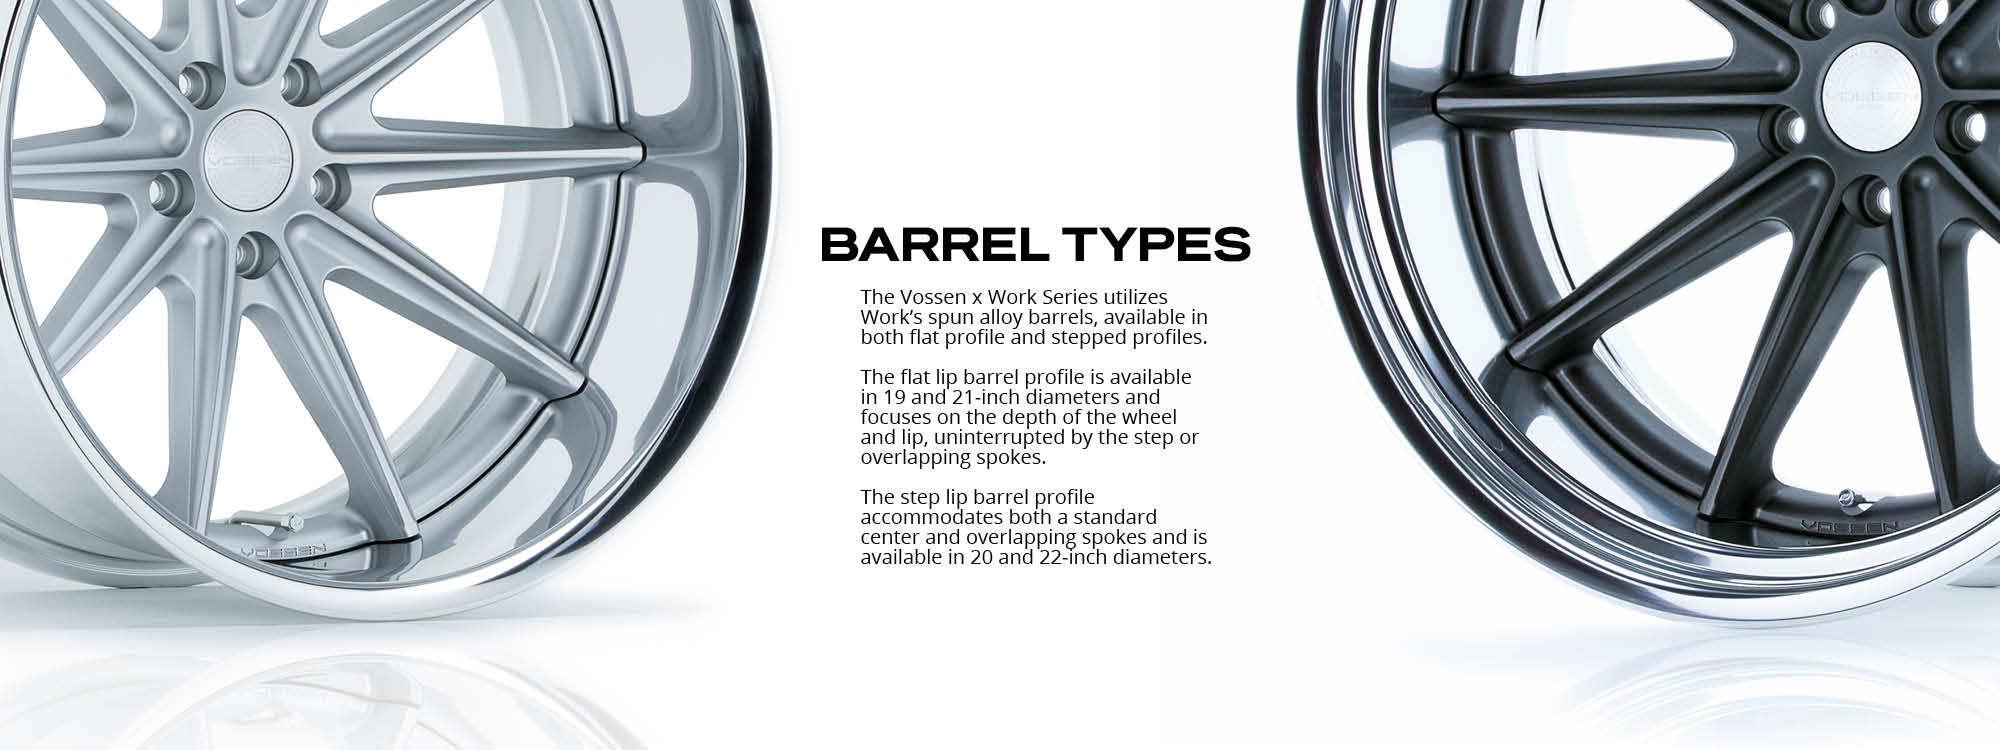 barrel-types-banner